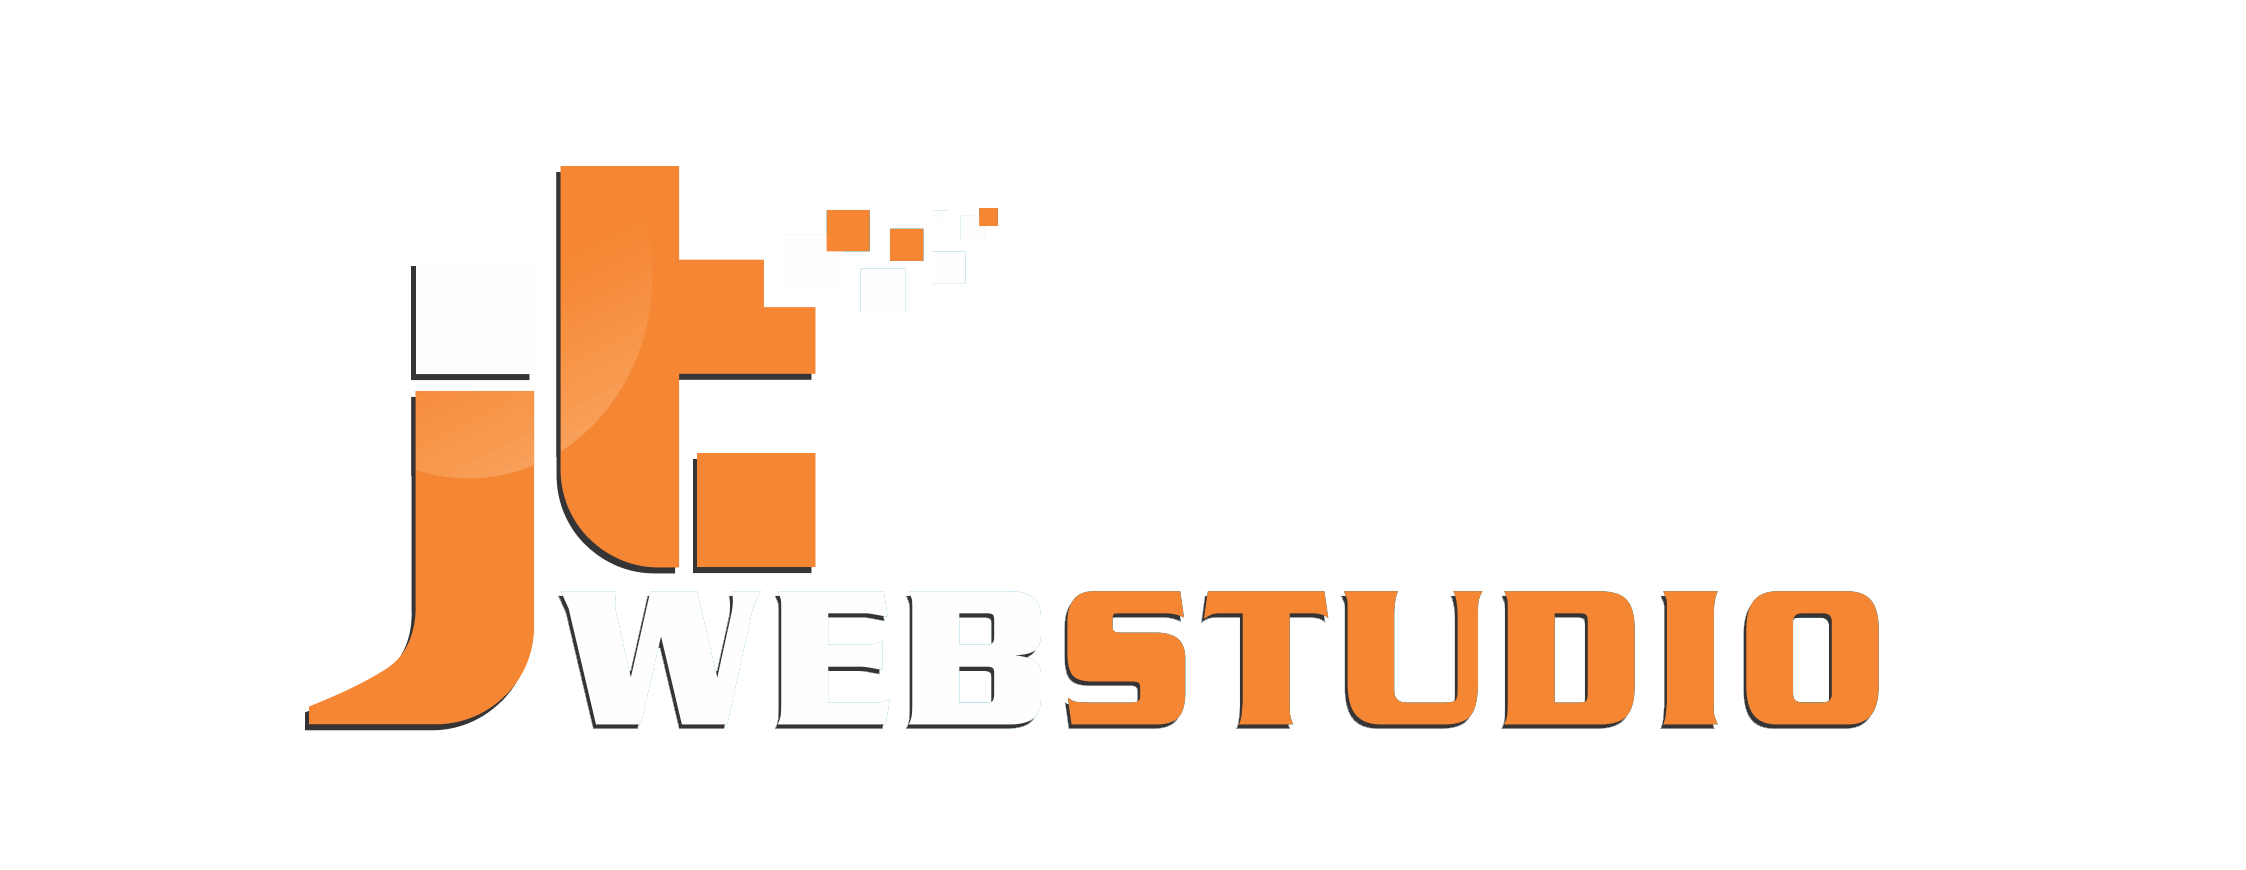 JTWebStudio website creation and design